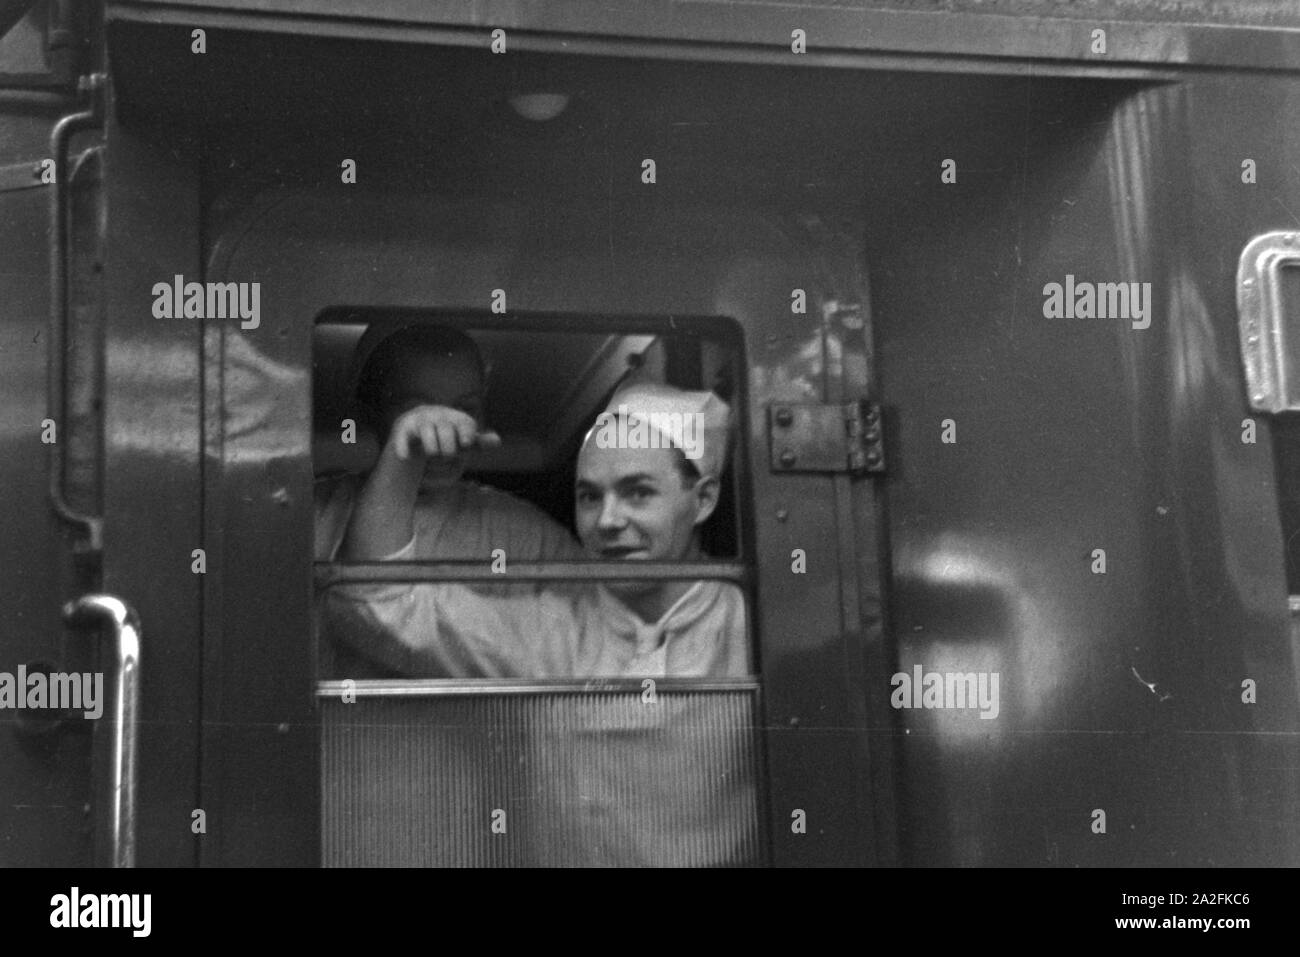 Von Speisewagens personnels Mitropa, Deutschland 1930 er Jahre. Personnel d'une voiture-restaurant MITROPA, Allemagne 1930. Banque D'Images